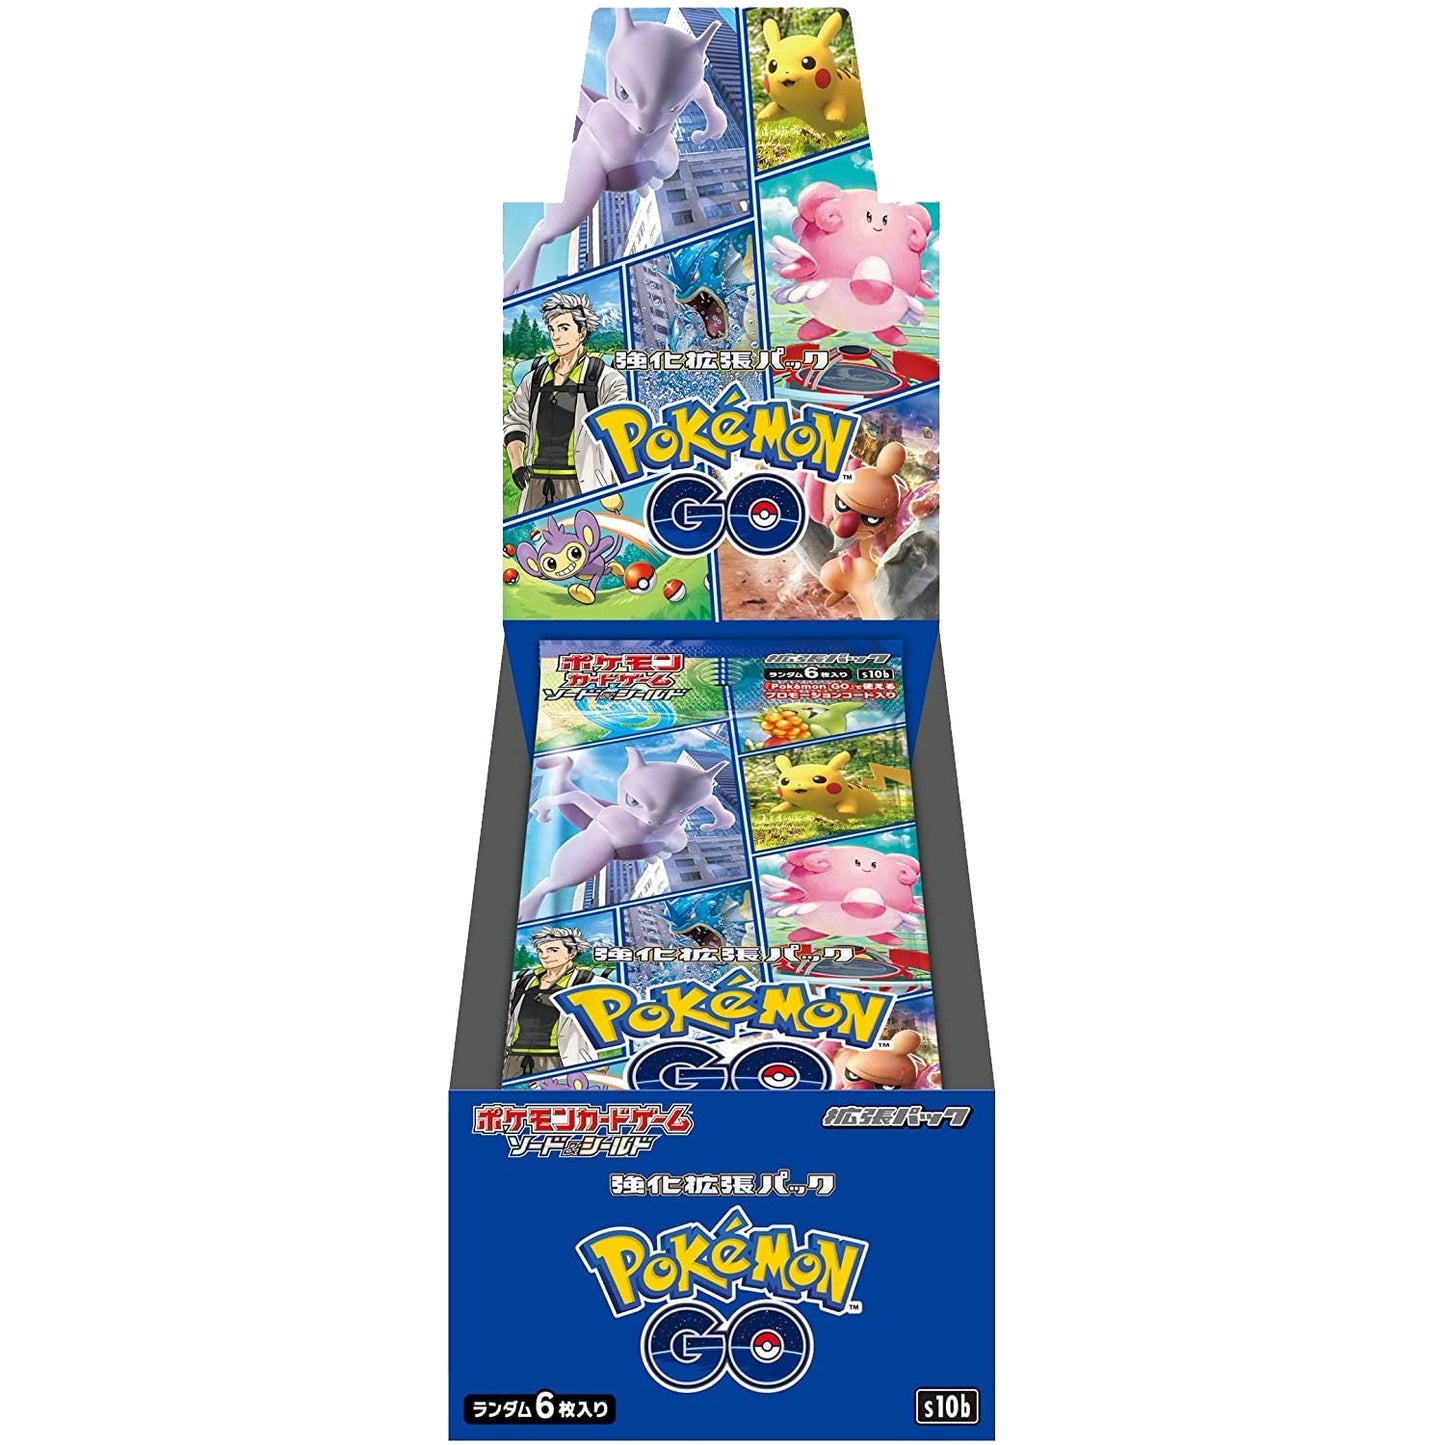 Pokemon Card Booster Box Pokémon GO s10b Japonés con paquete promocional